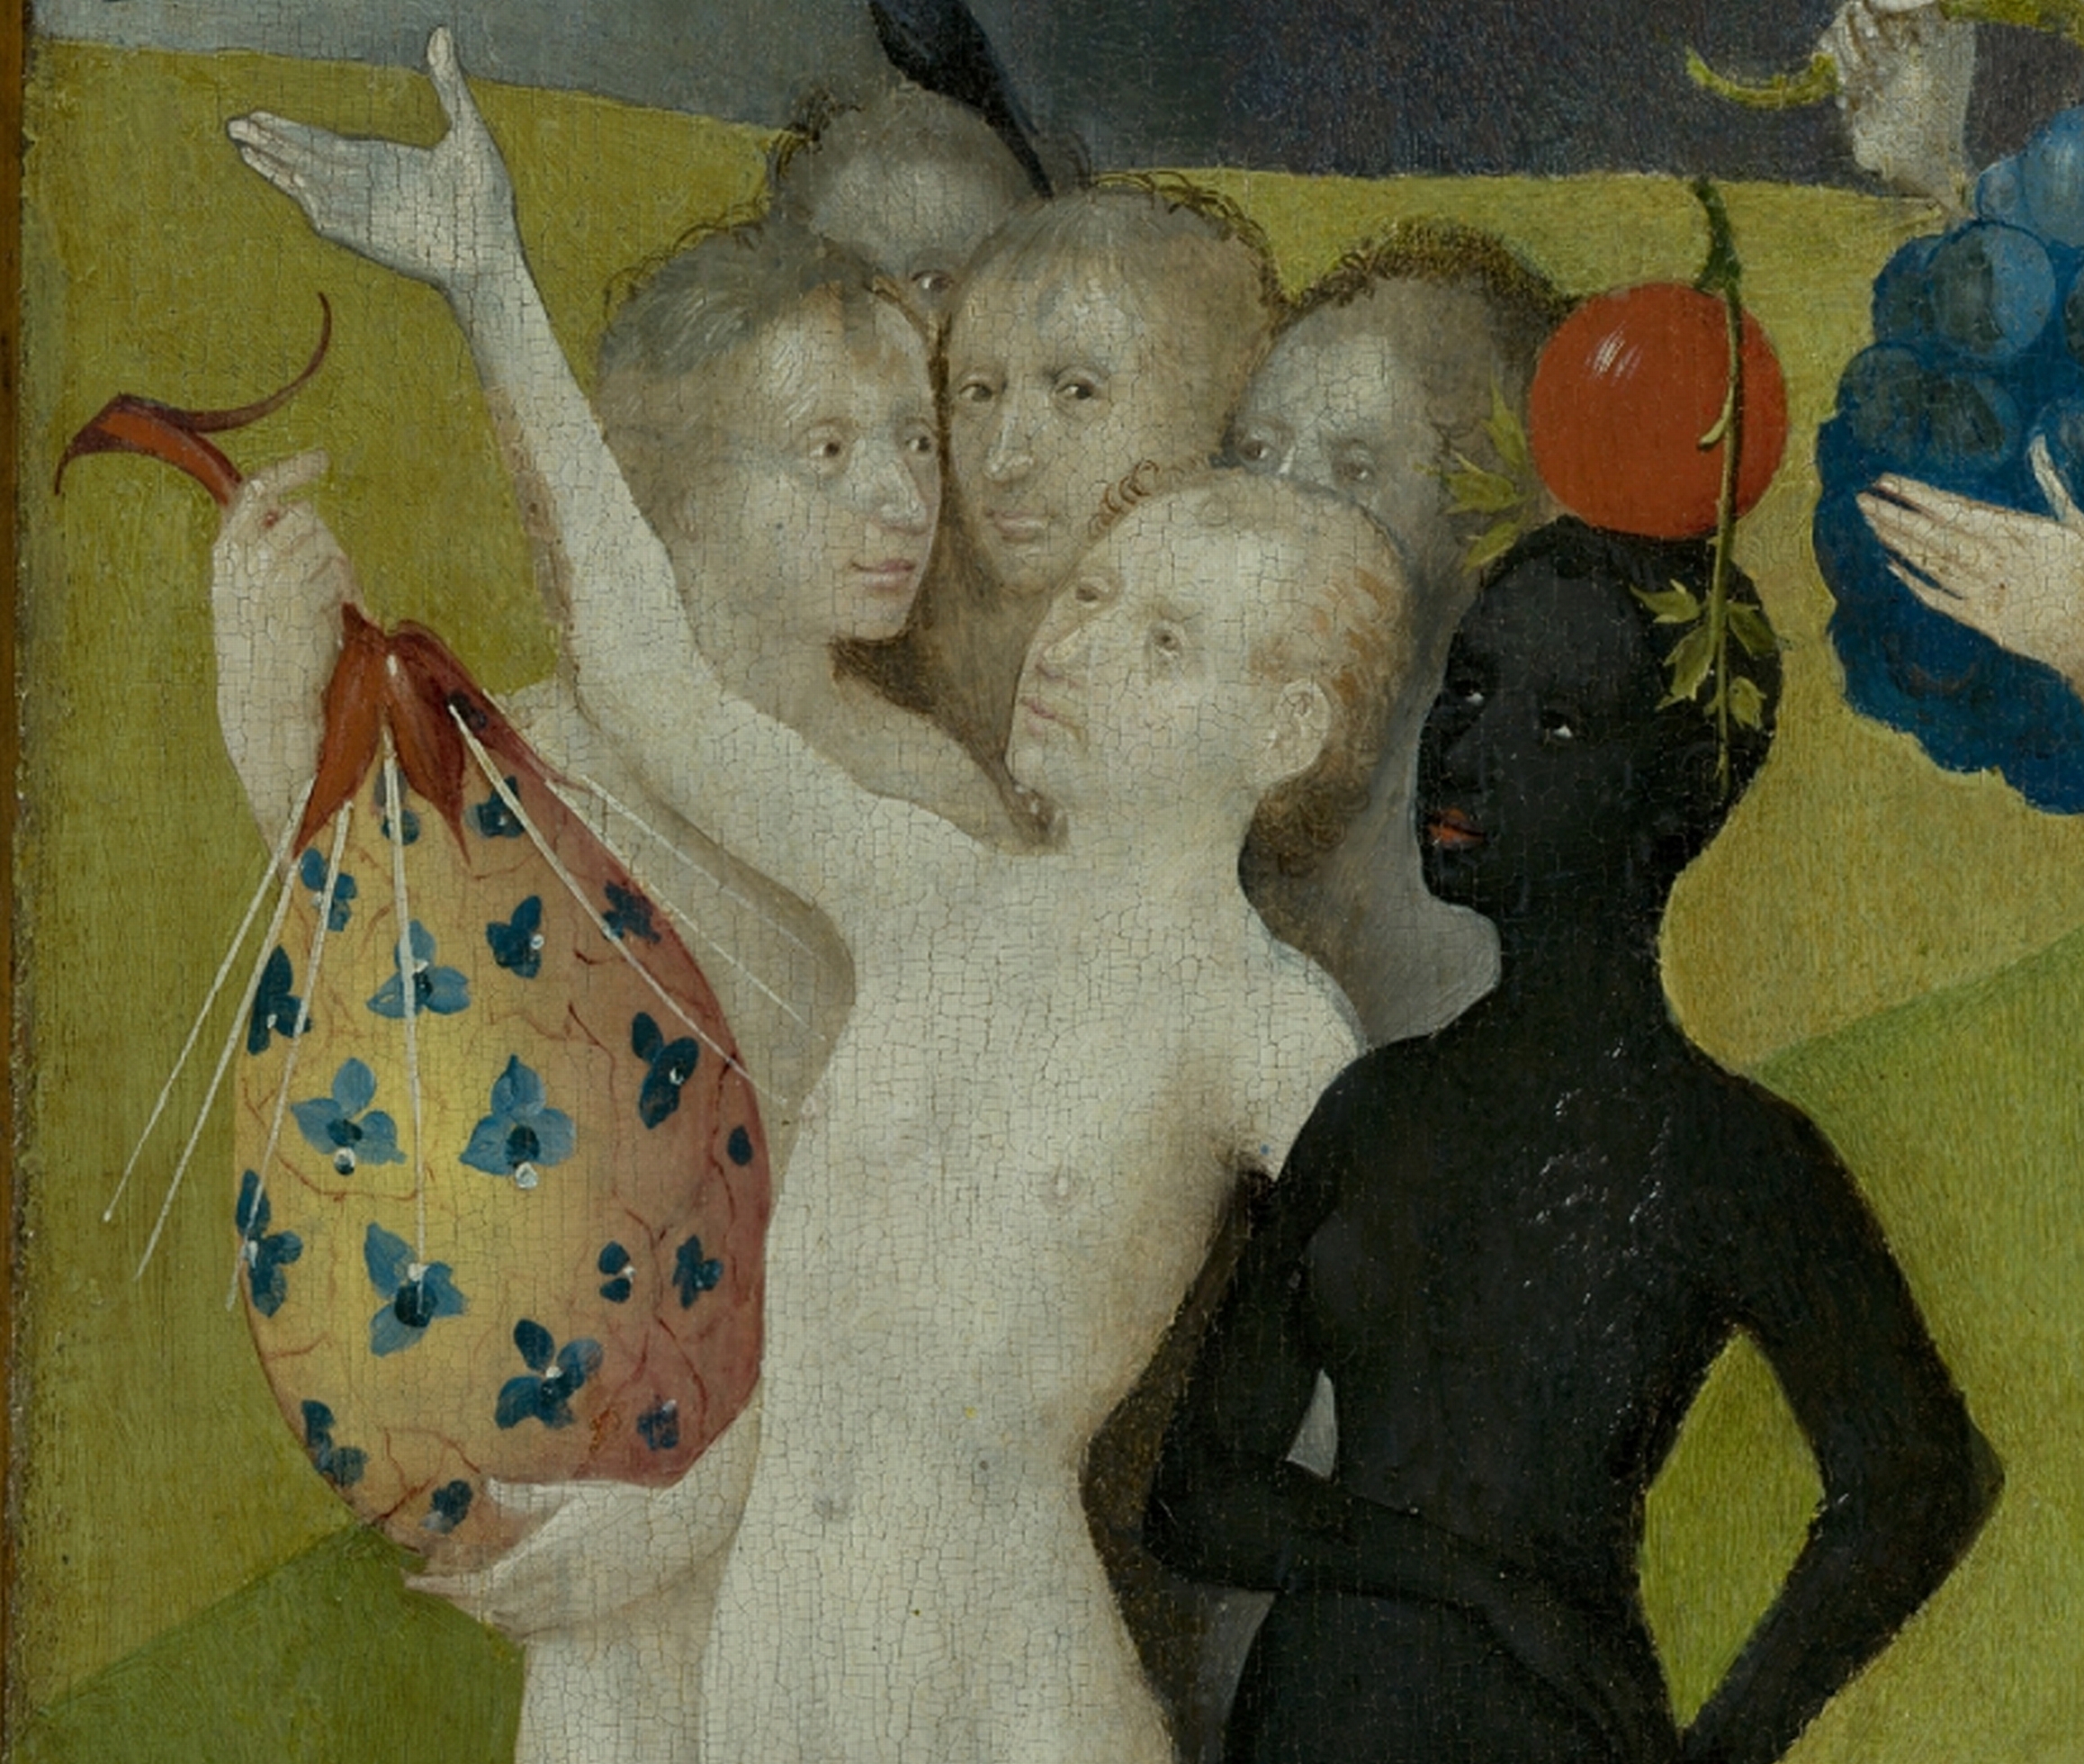 Détail du panneau central du Jardin des délices représentant un homme nu blanc et une femme nue noire portant en équilibre sur la tête un fruit rouge